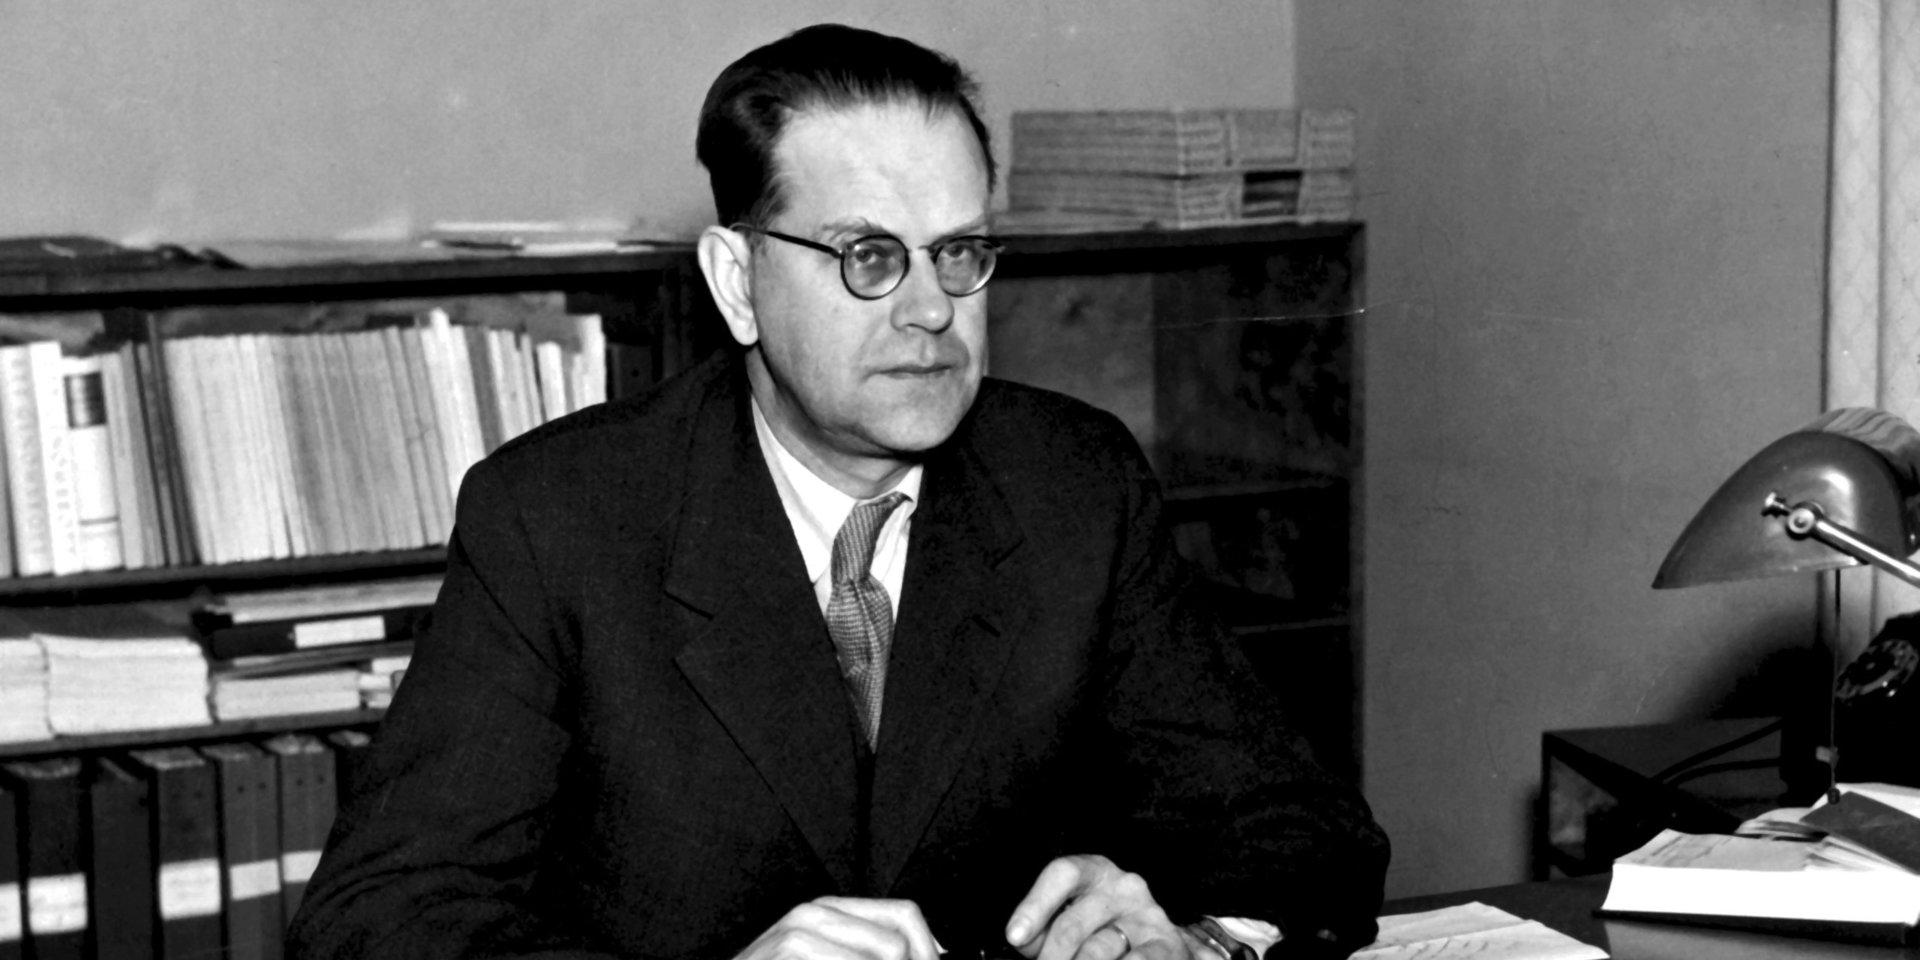 ©SCANPIX SWEDEN, 1945-01-10.
Ecklesiastikminister Tage Erlander.
Han sitter vid ett skrivbord med papper framför sig.
Foto: Scanpix Code: 20360